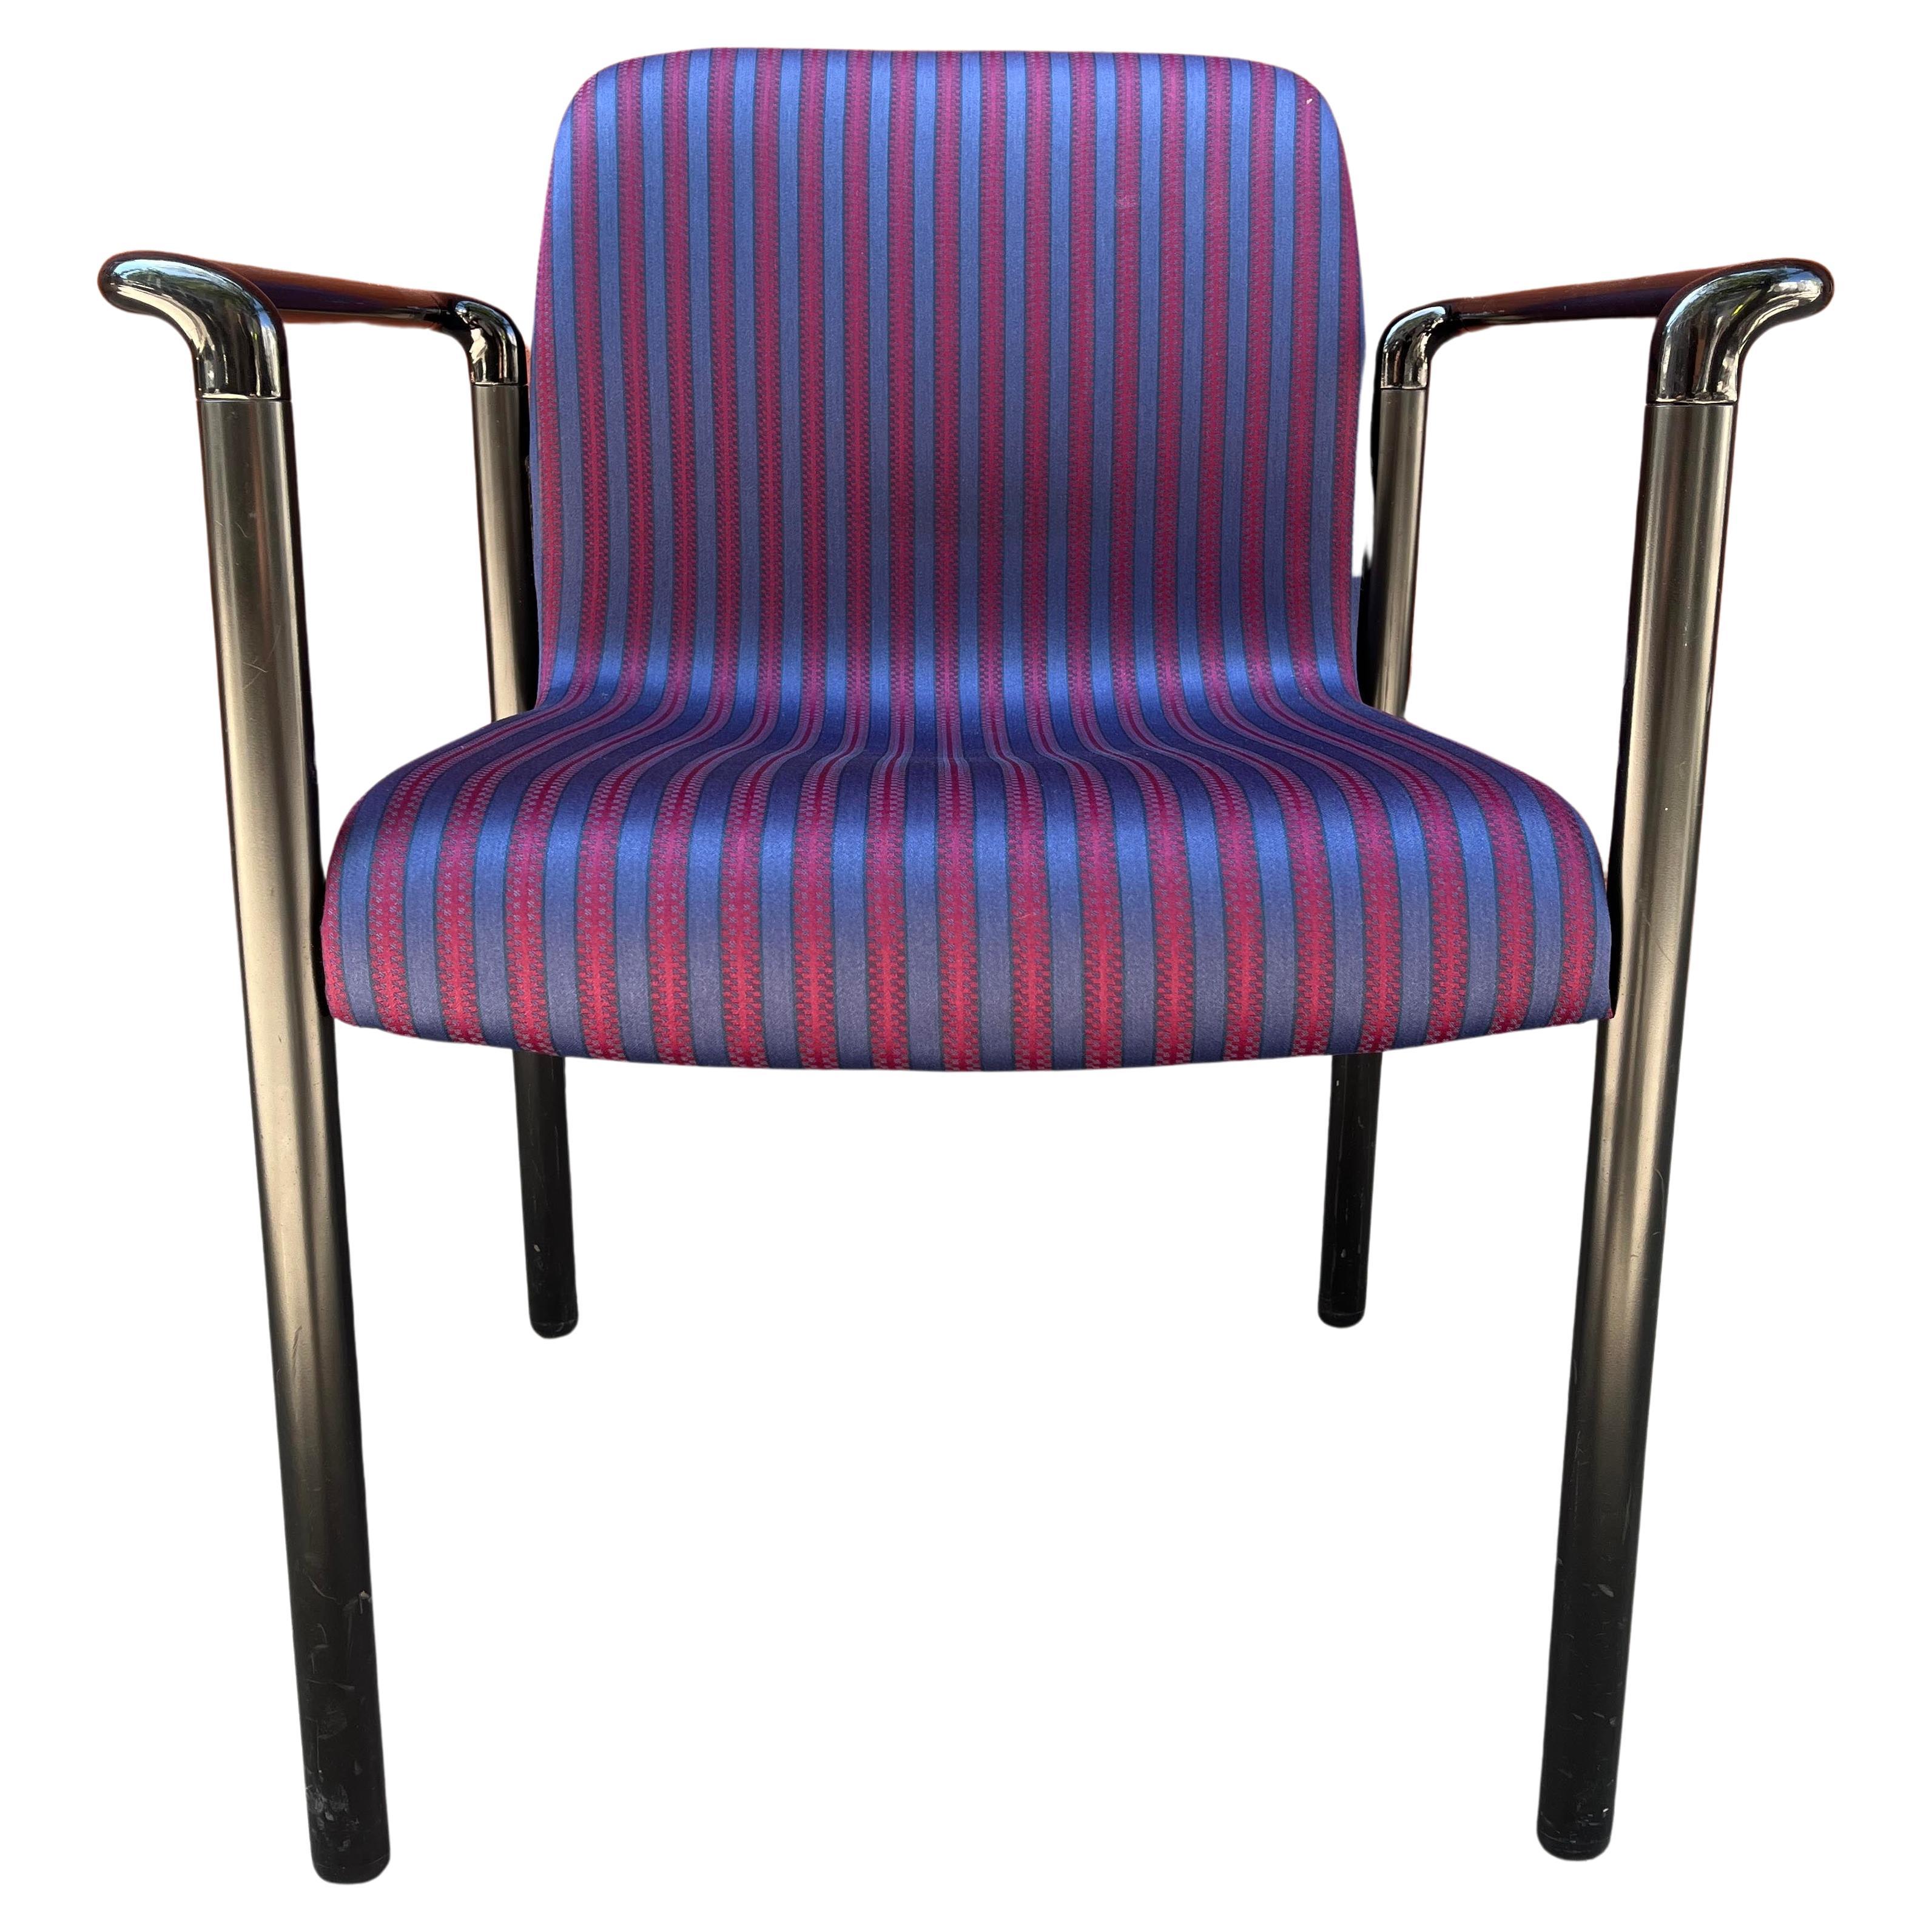 Postmoderne Herman Miller Stühle mit wunderschönem Alexander Girard Miller Stripe Stoff. Ein zusätzlicher Bonus ist, dass sie stapelbar sind. Bis zu 3 verfügbar

Arm H 25''

Angebot für individuellen Versand anfordern